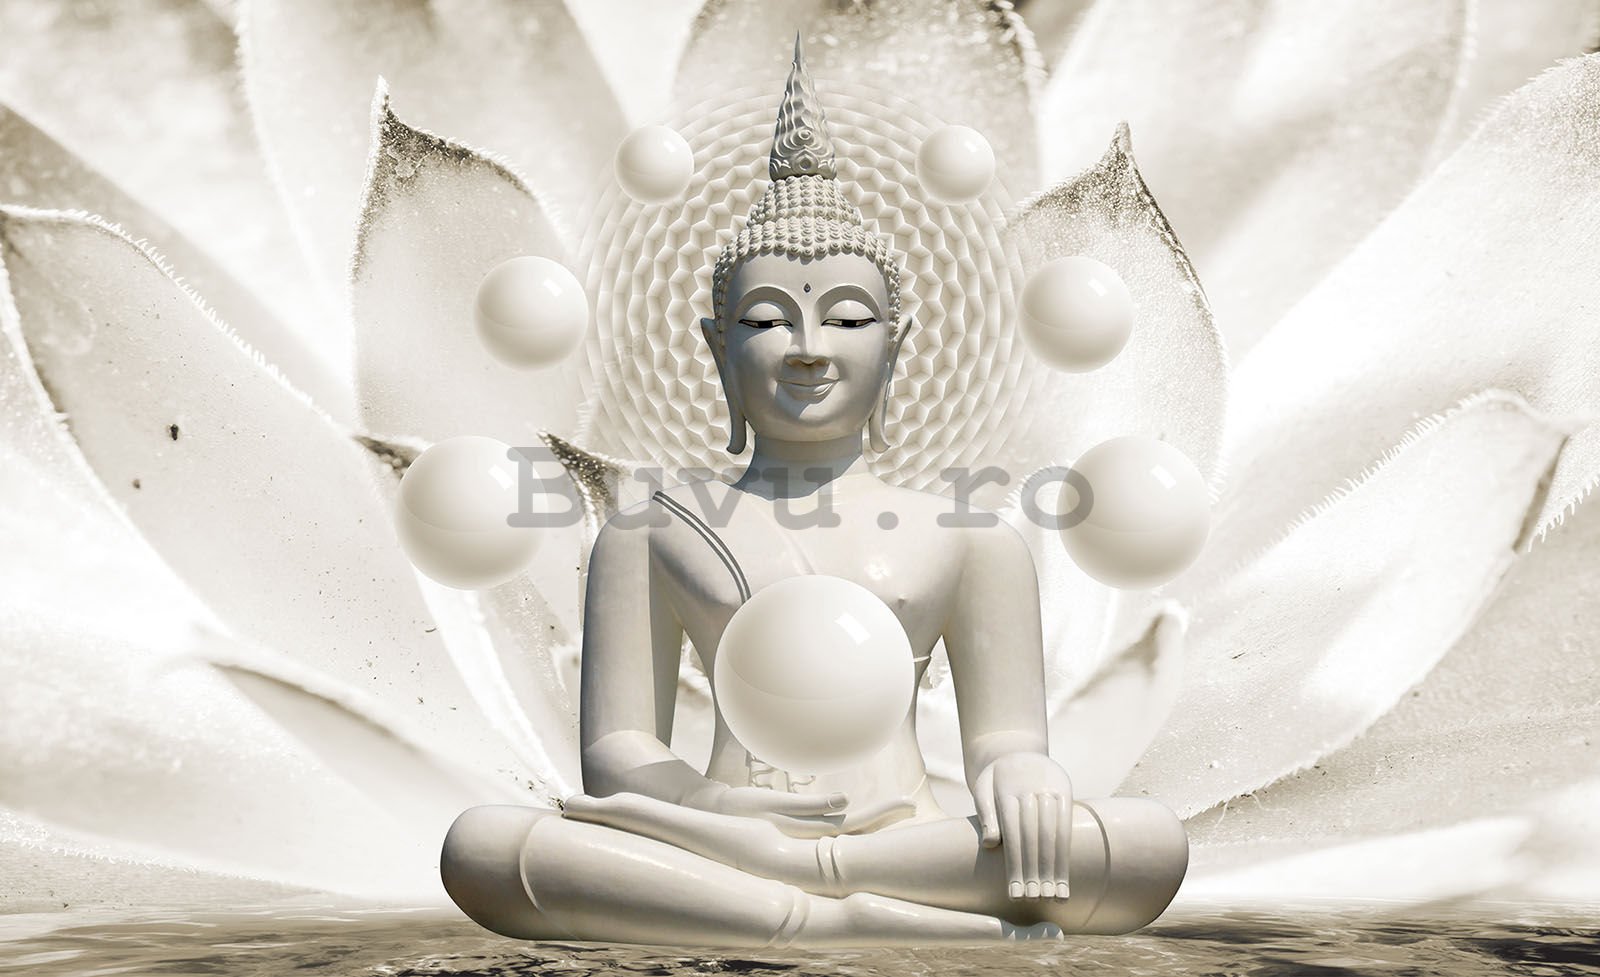 Fototapet vlies: Buddha (alb) - 152,5x104 cm